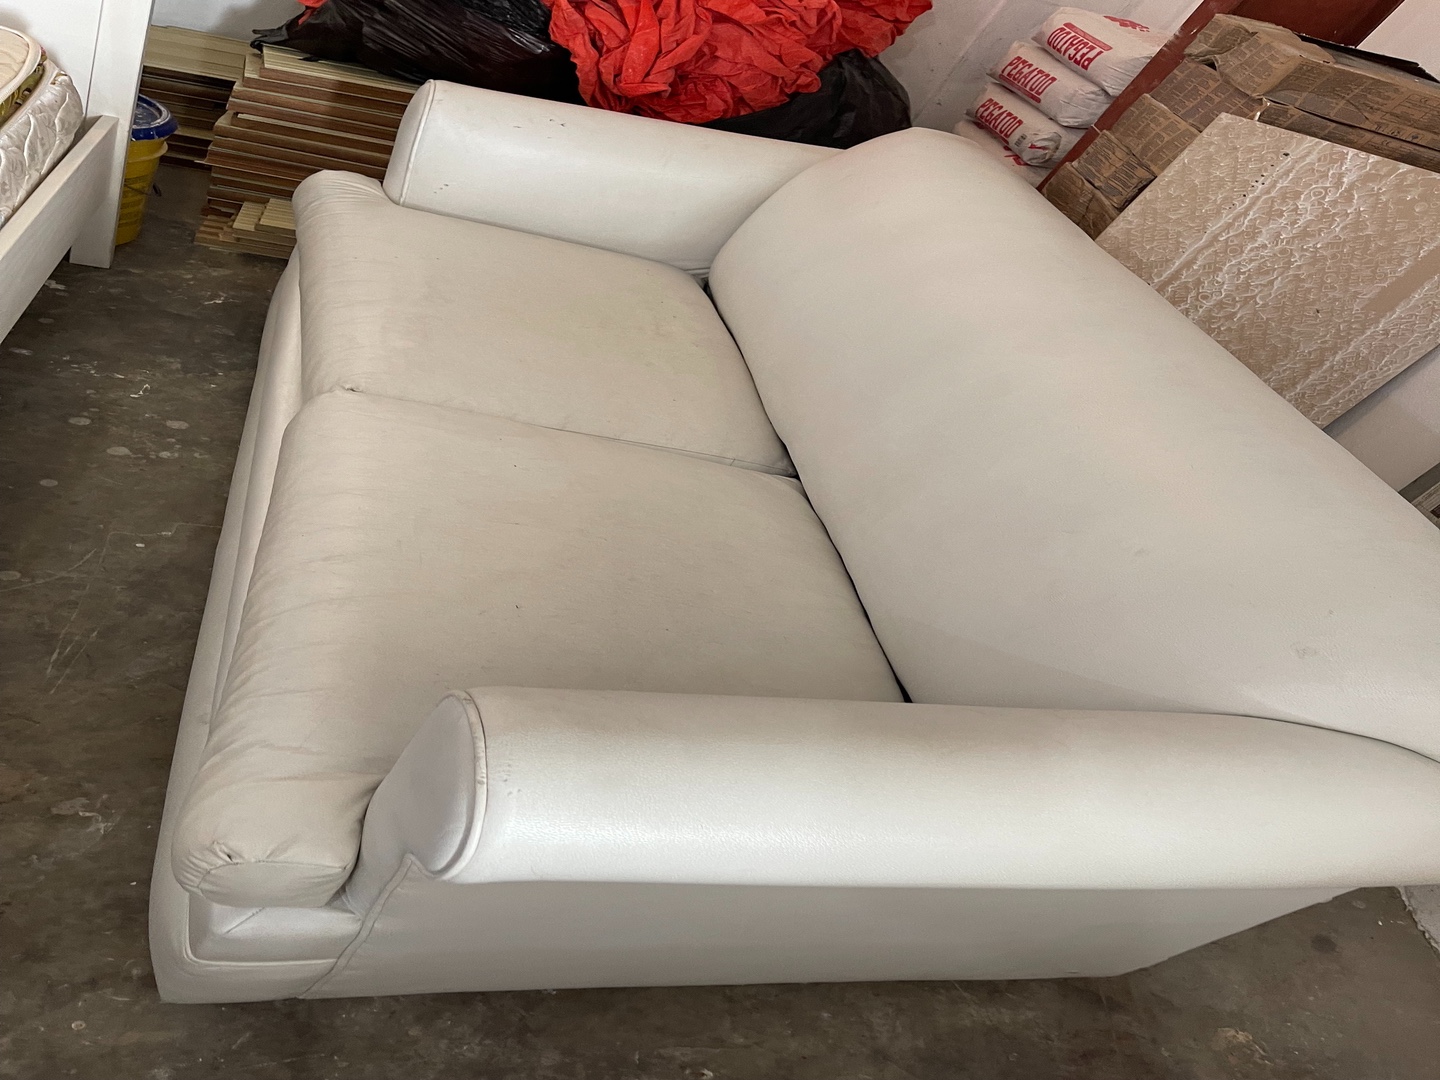 muebles y colchones - sofa cama en vinyl blanco 0